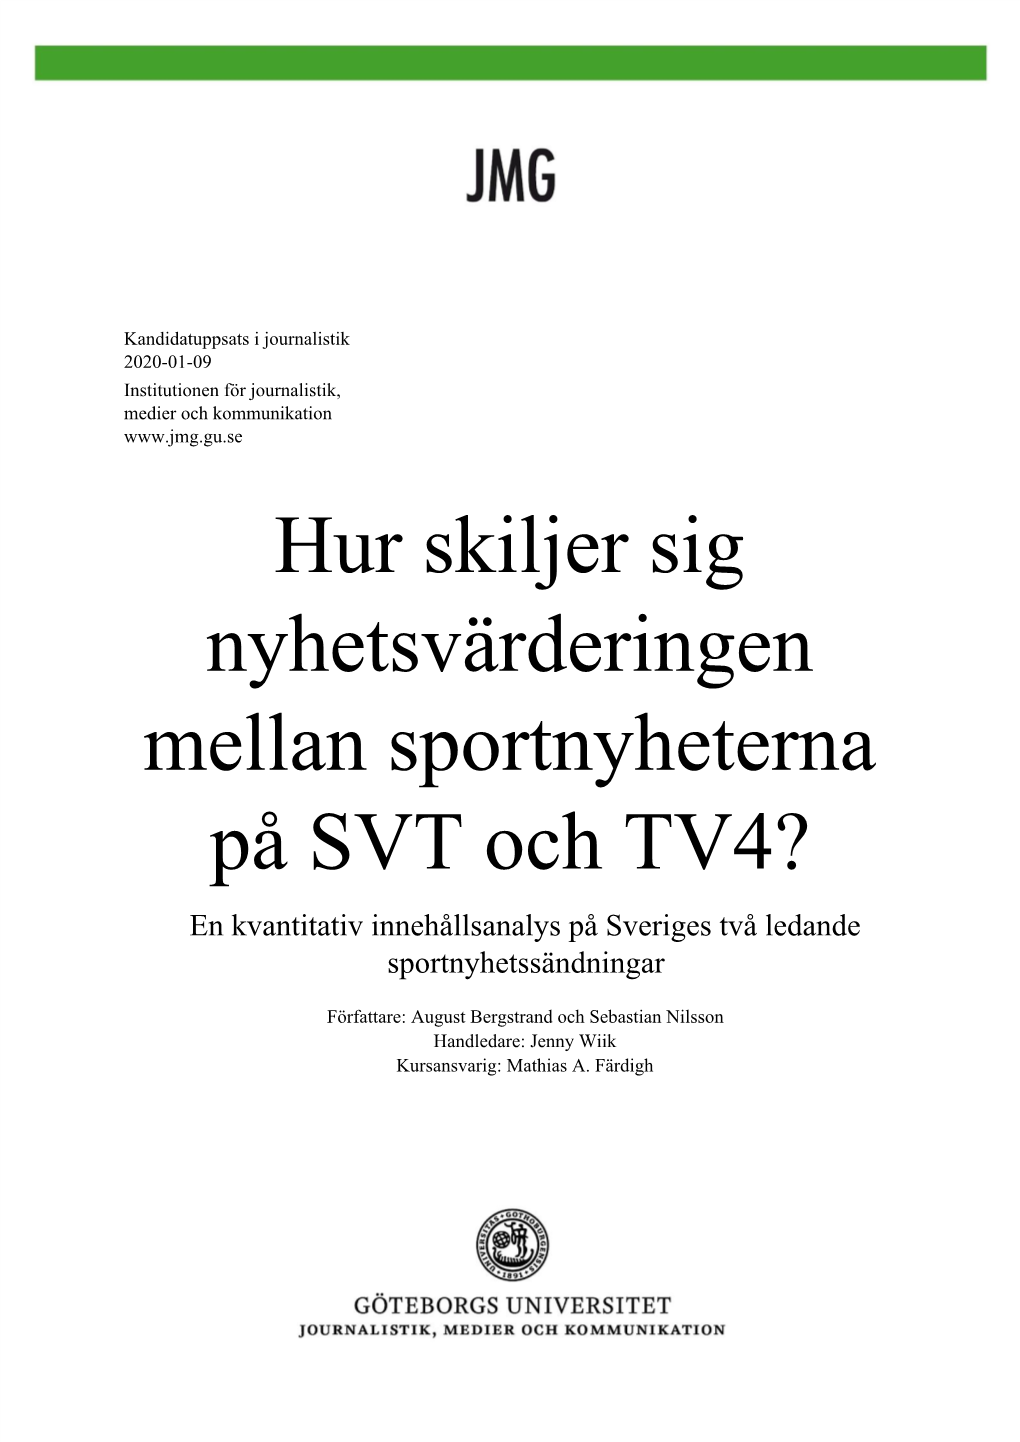 Hur Skiljer Sig Nyhetsvärderingen Mellan Sportnyheterna På SVT Och